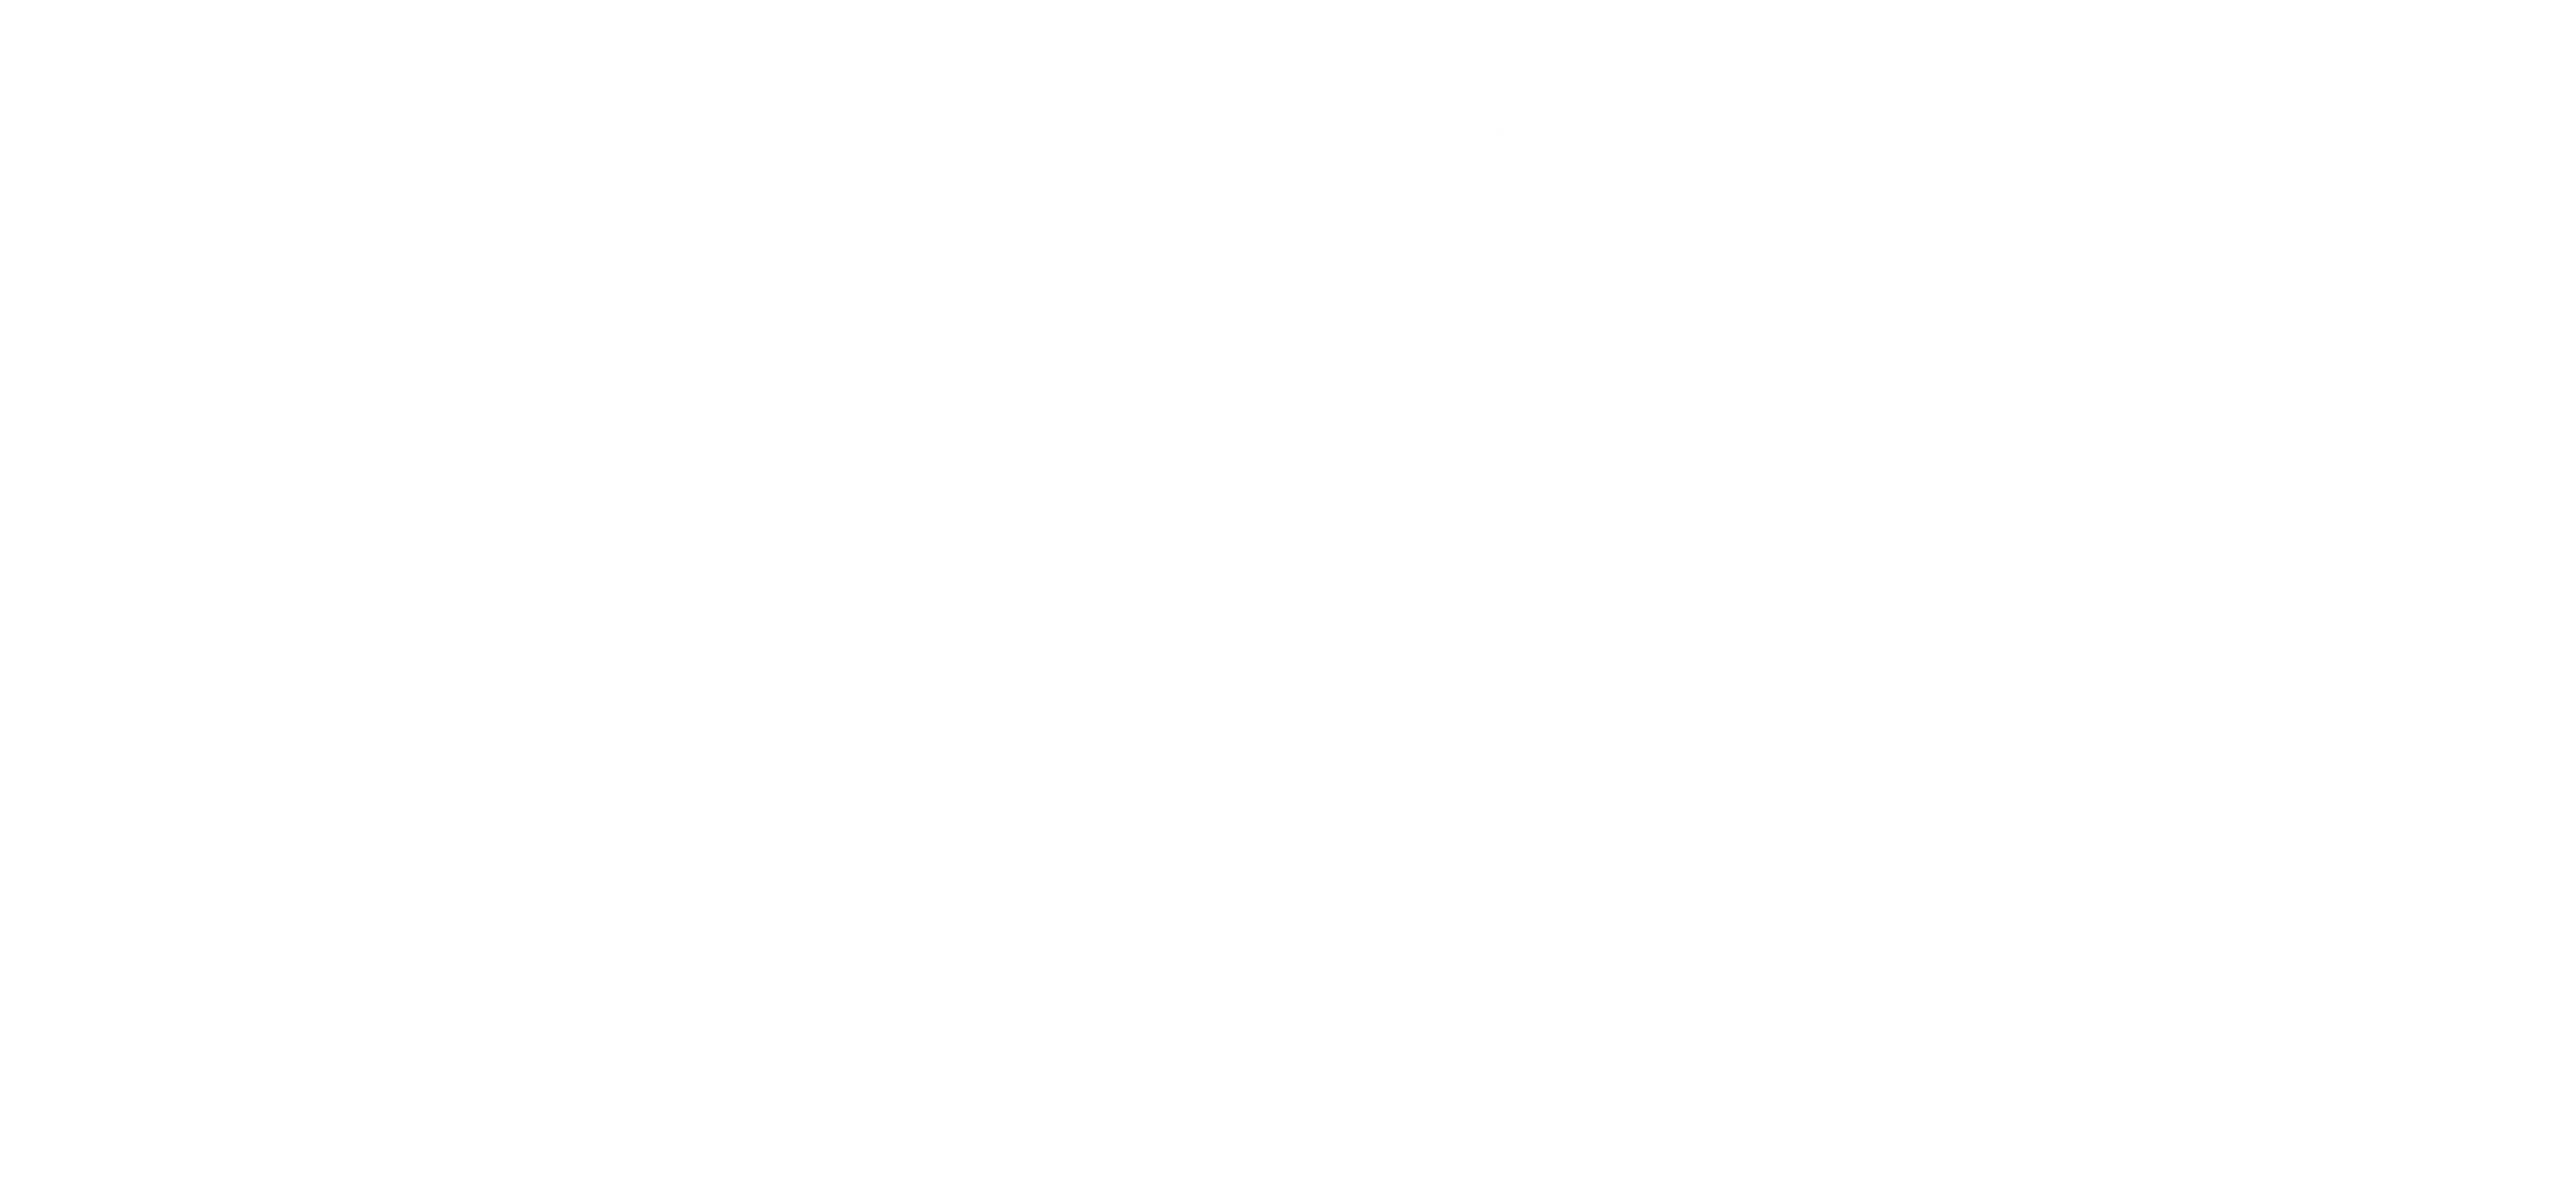 Malecon